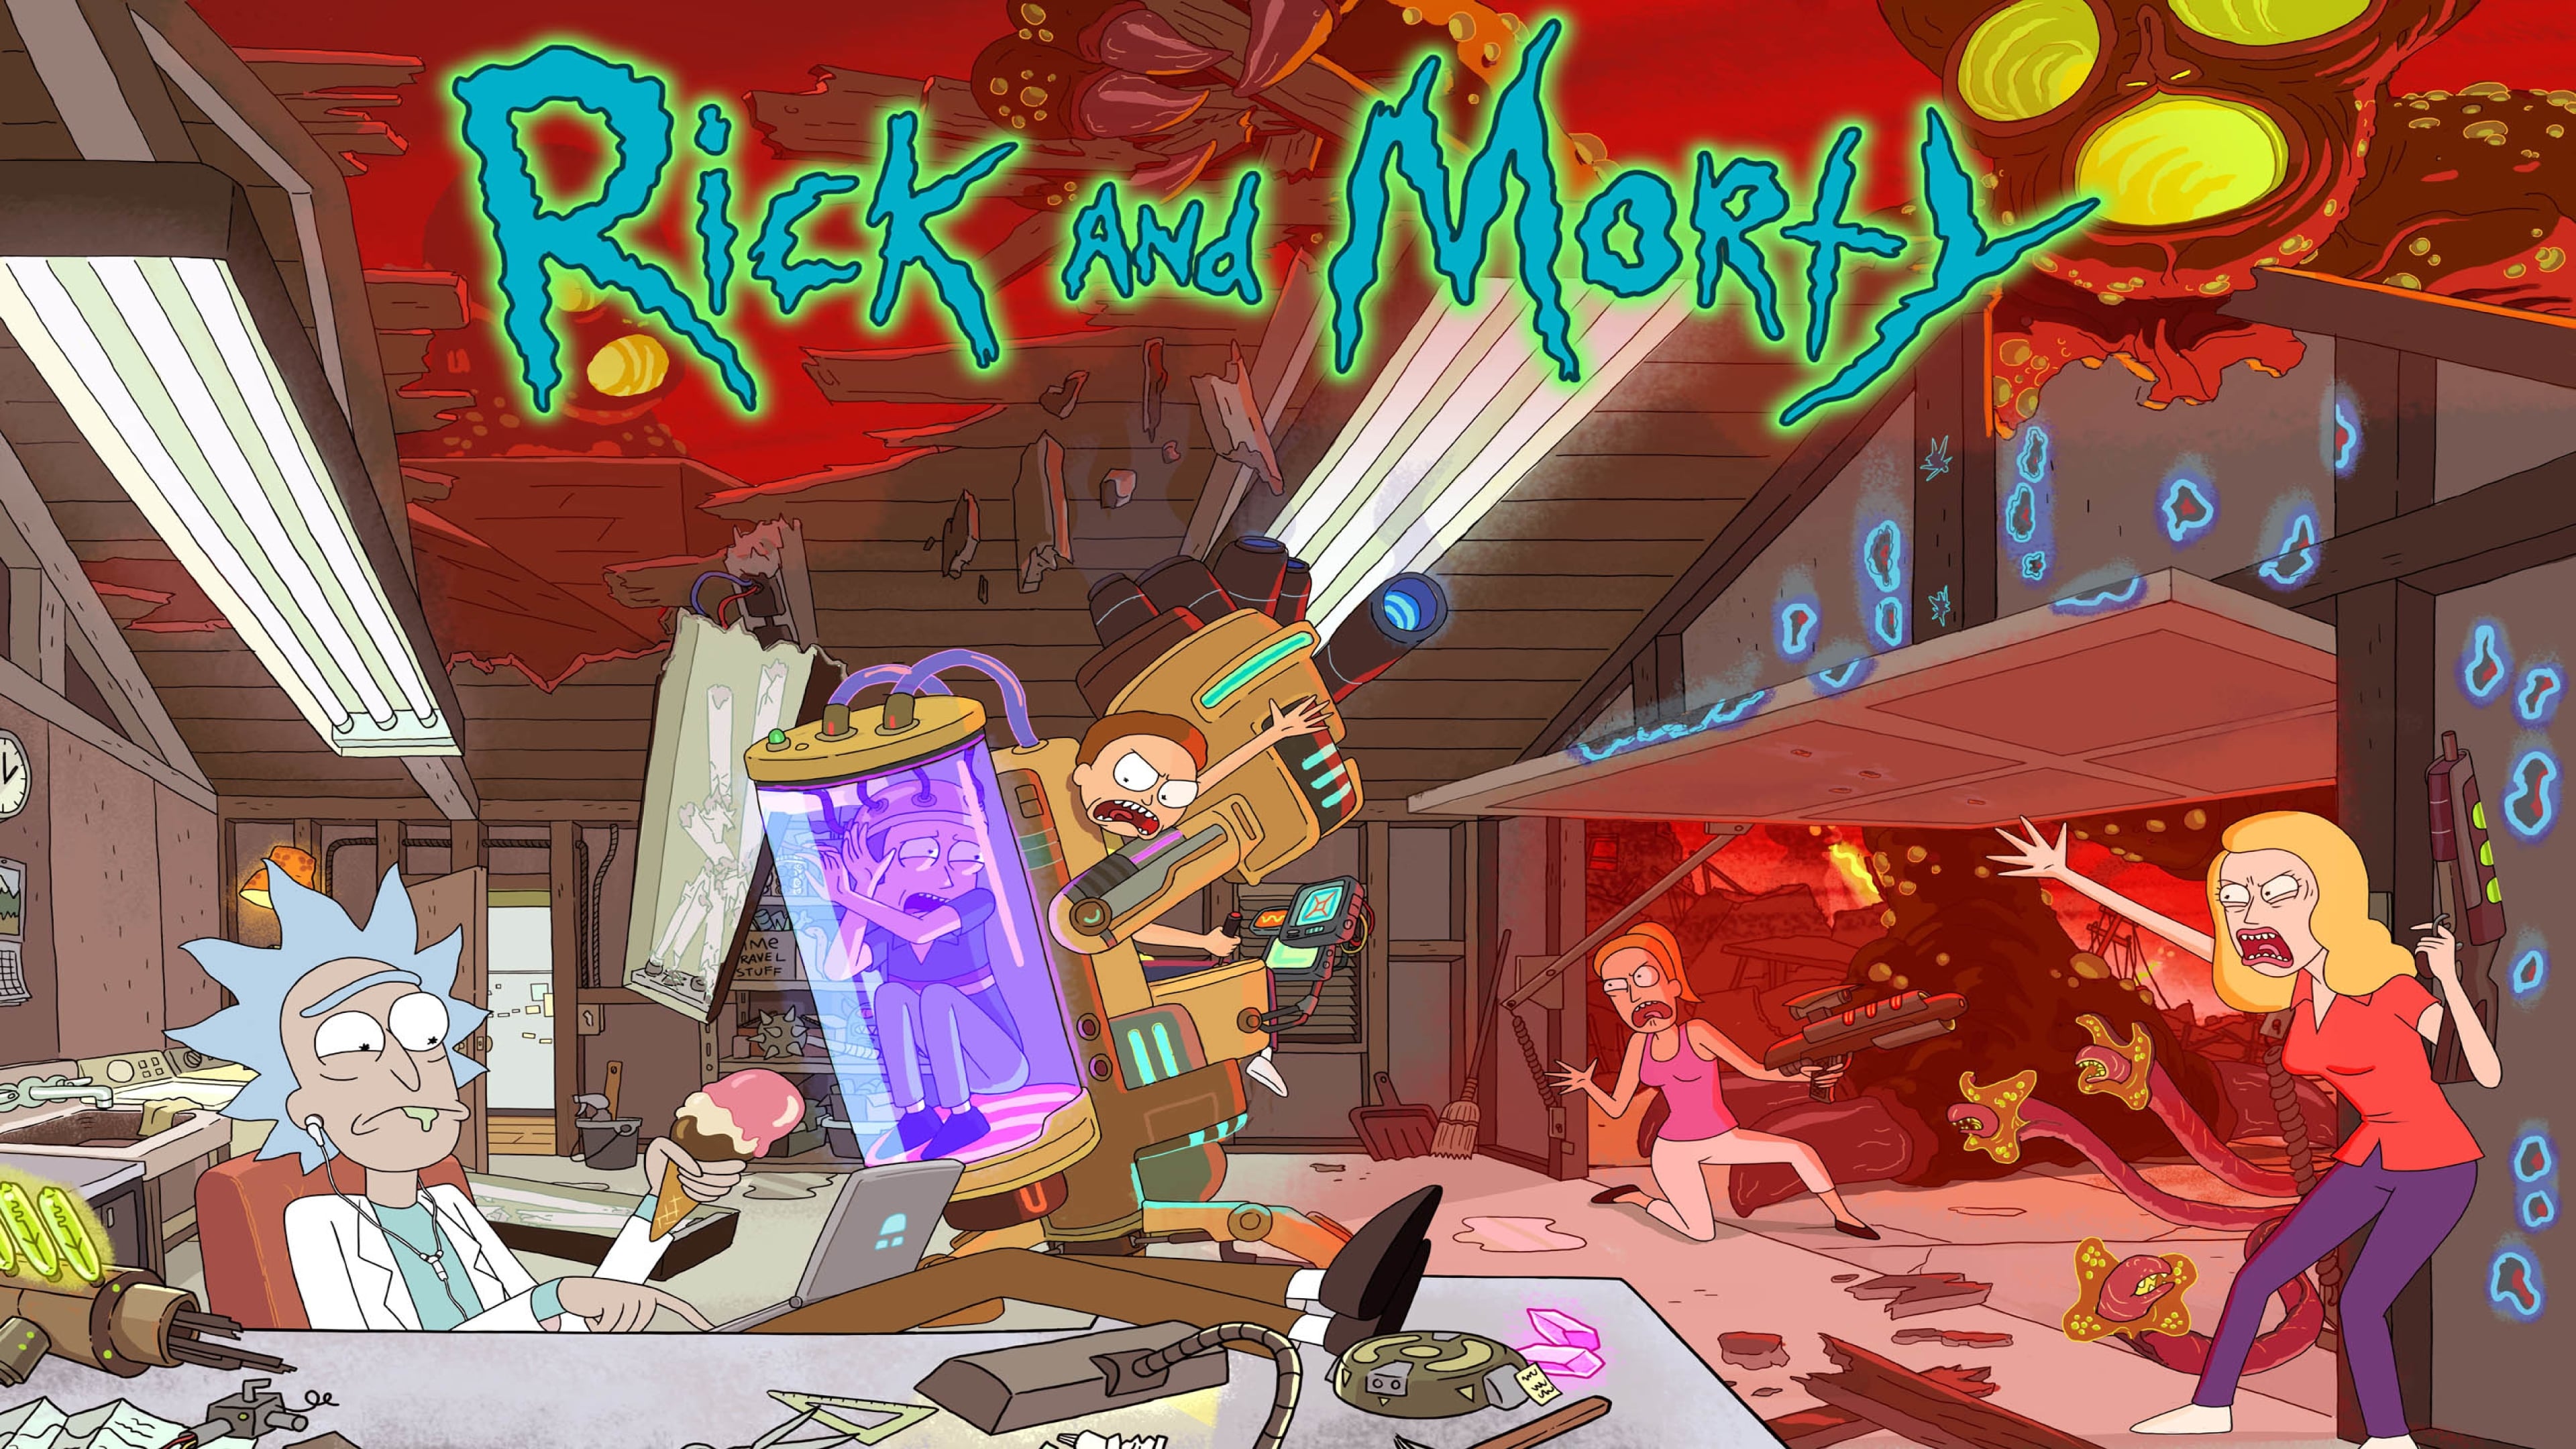 Rick and Morty - Season 2